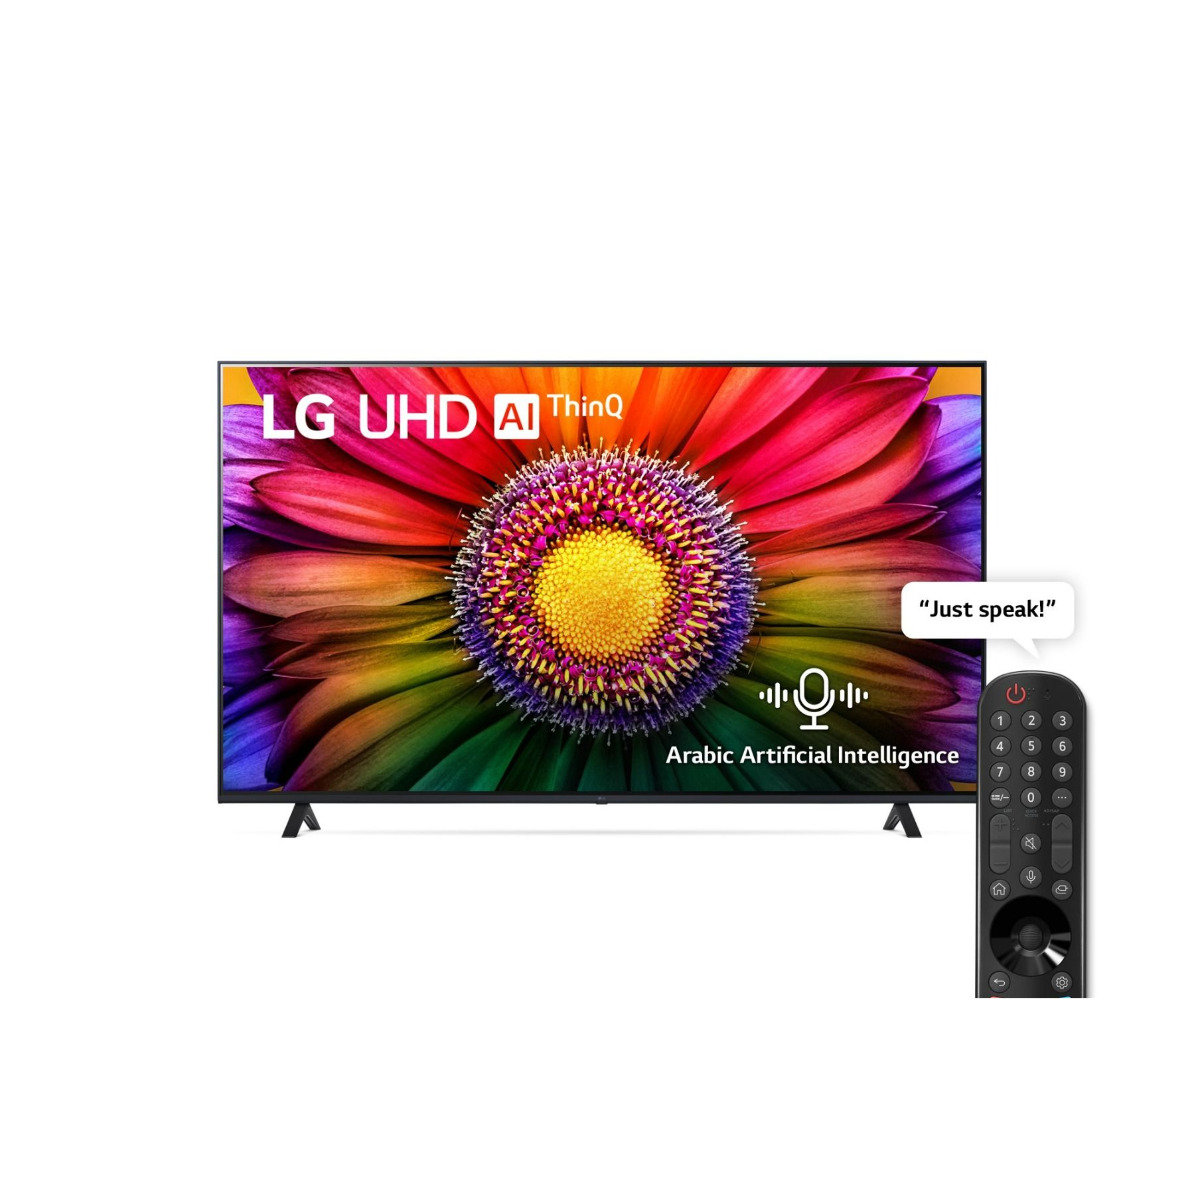 LG TV LED, 75 Inch, UHD - 4K Smart TV - HDR 10 Pro - 75UR80006LJ